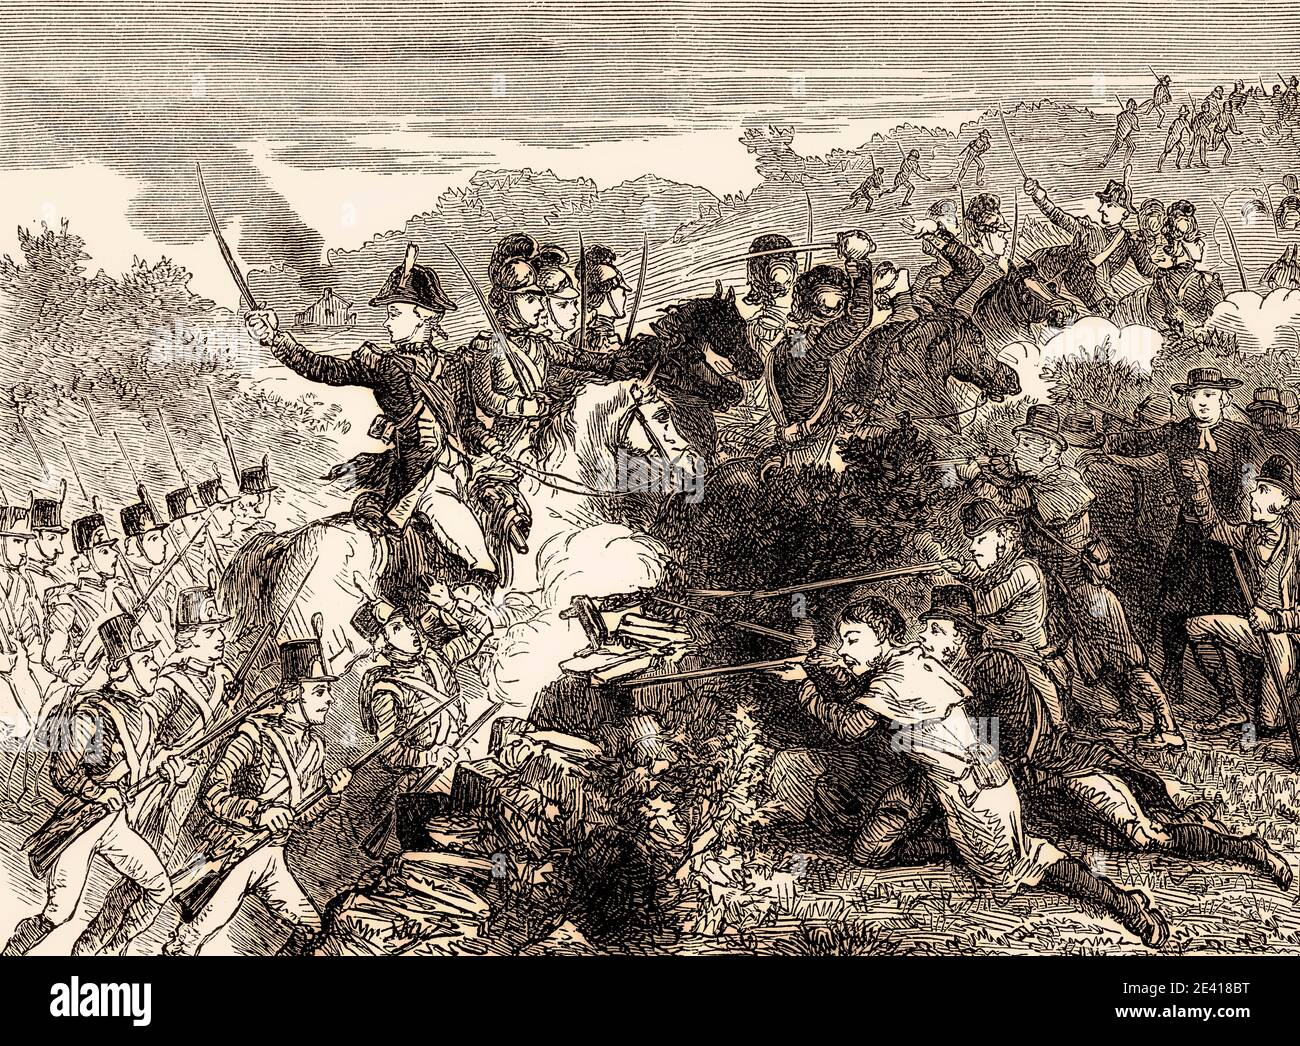 The Wexford Rellion, Angriff der Britischen Armee auf die Wexford Rebellen, 1798, Irischer Aufstand von 1798, von britischen Schlachten auf Land und See, von James Grant Stockfoto